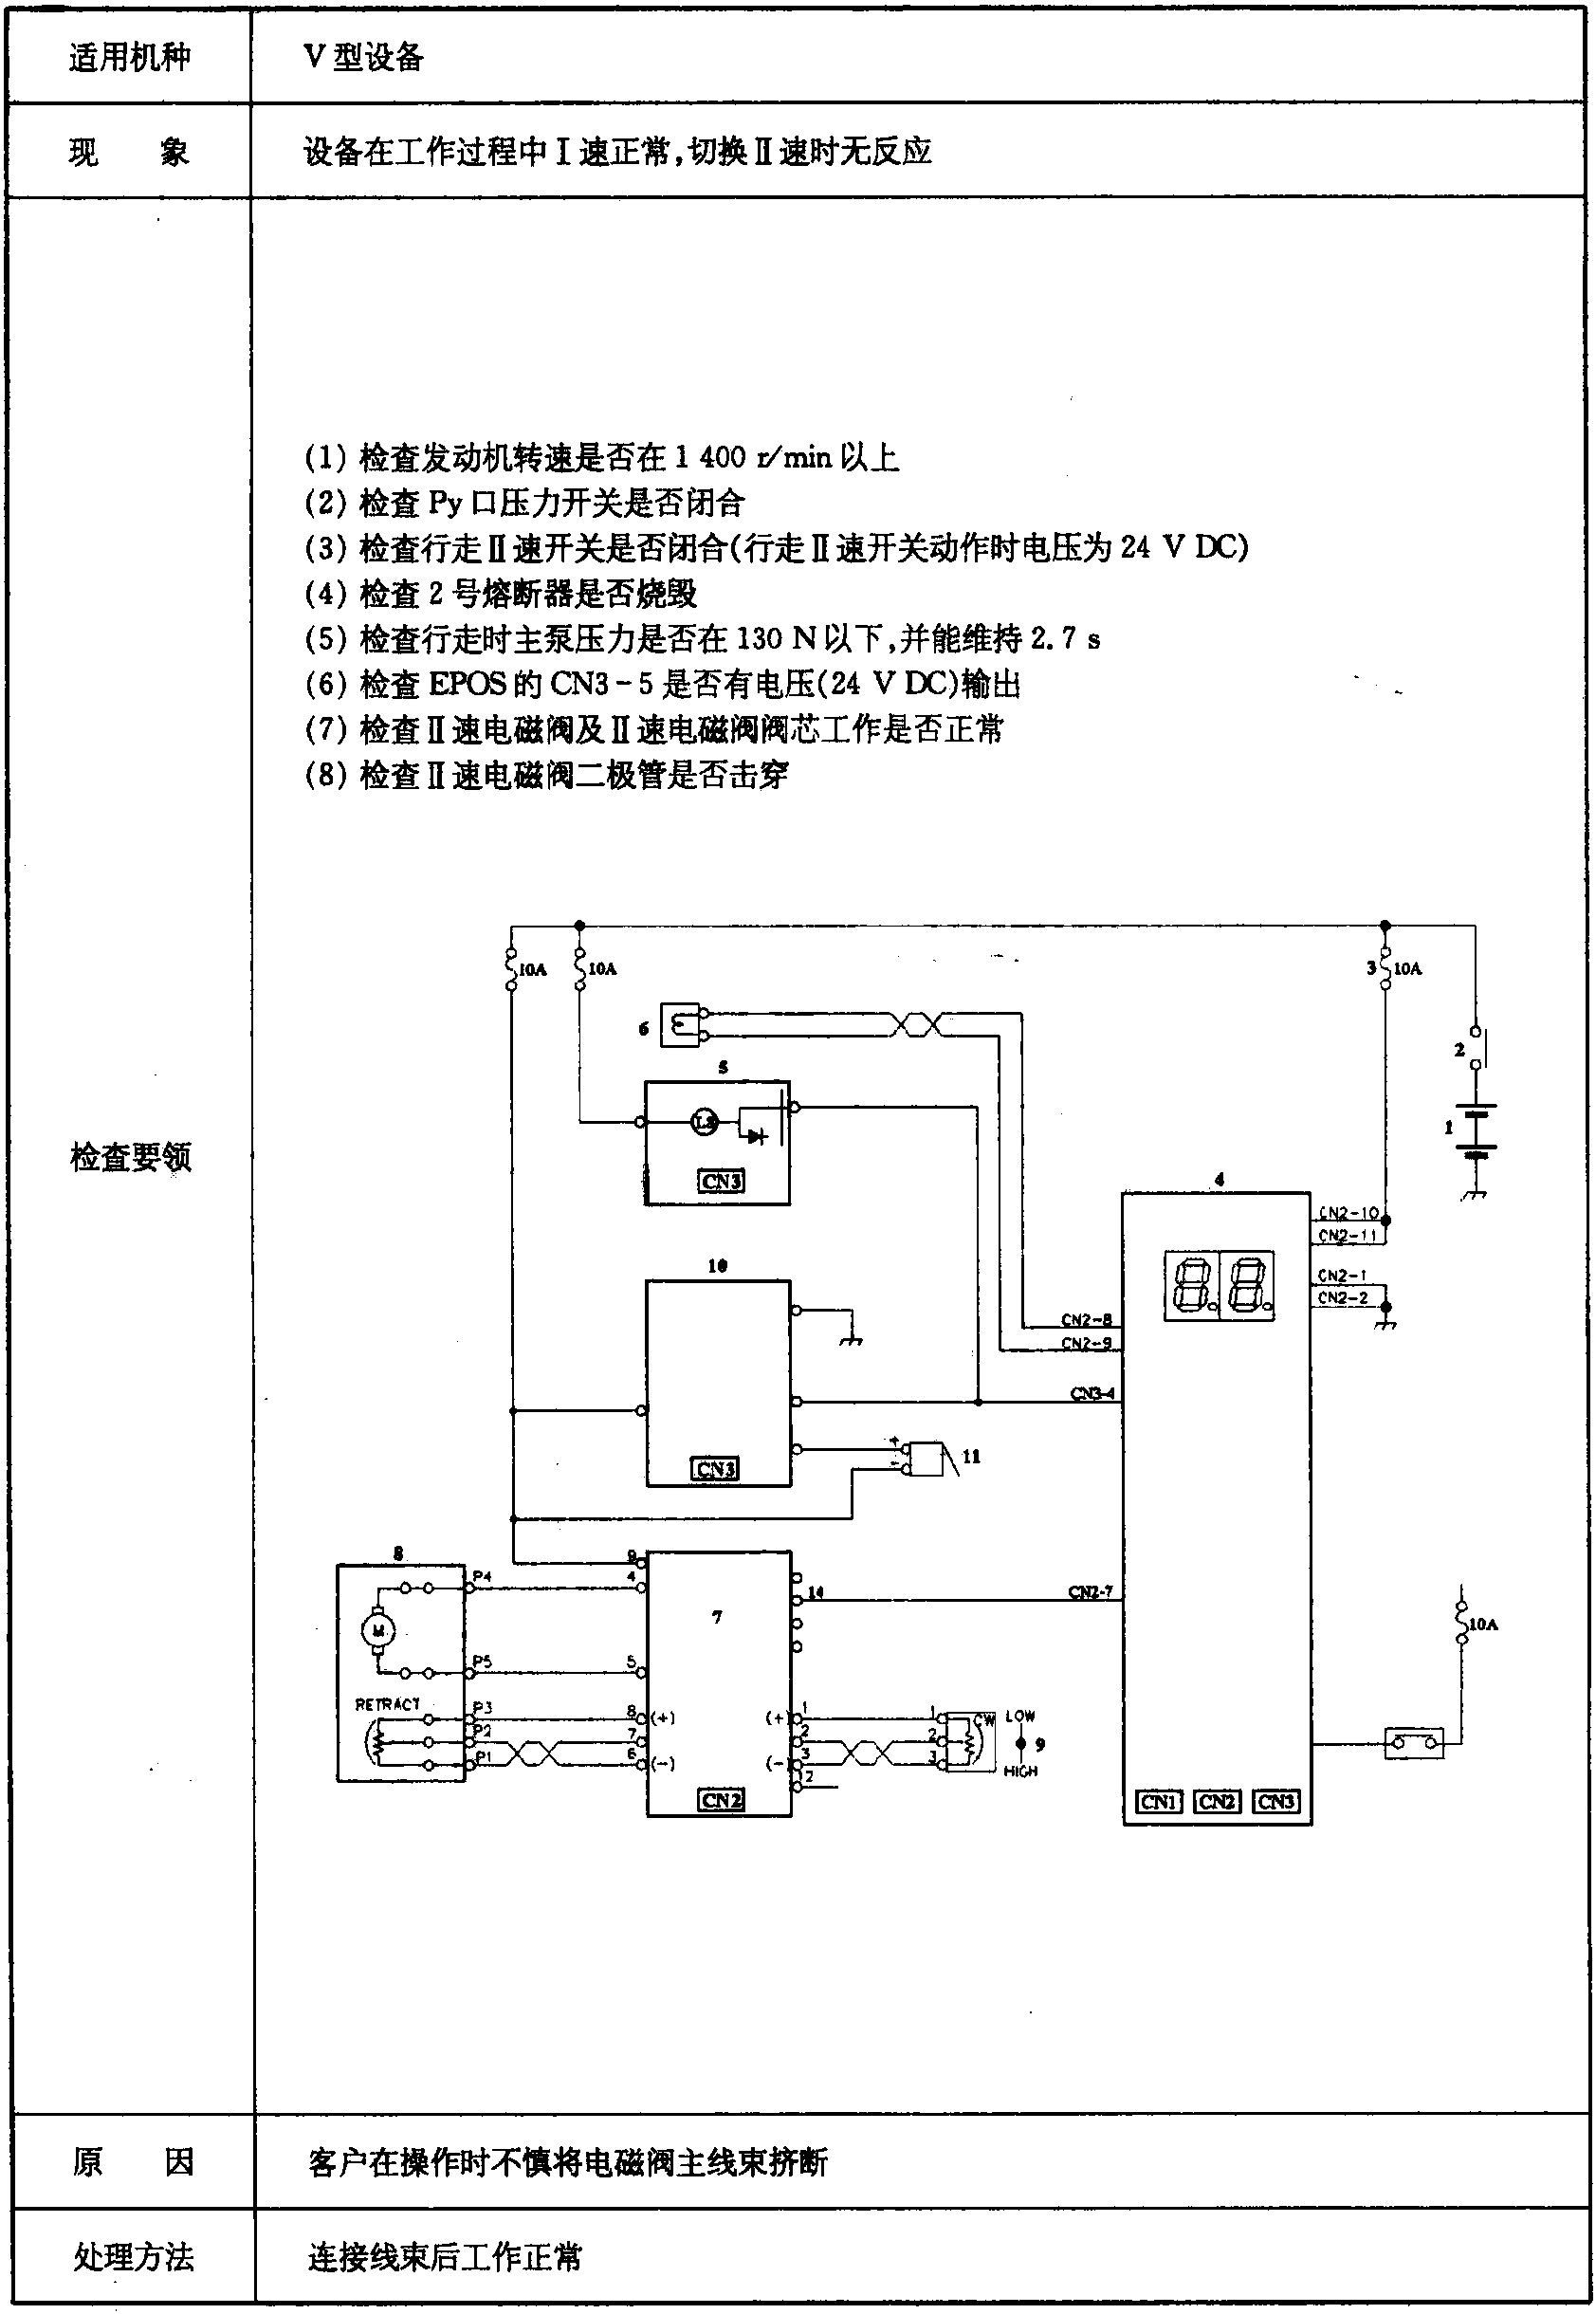 行走无Ⅱ速(表2.4-4)